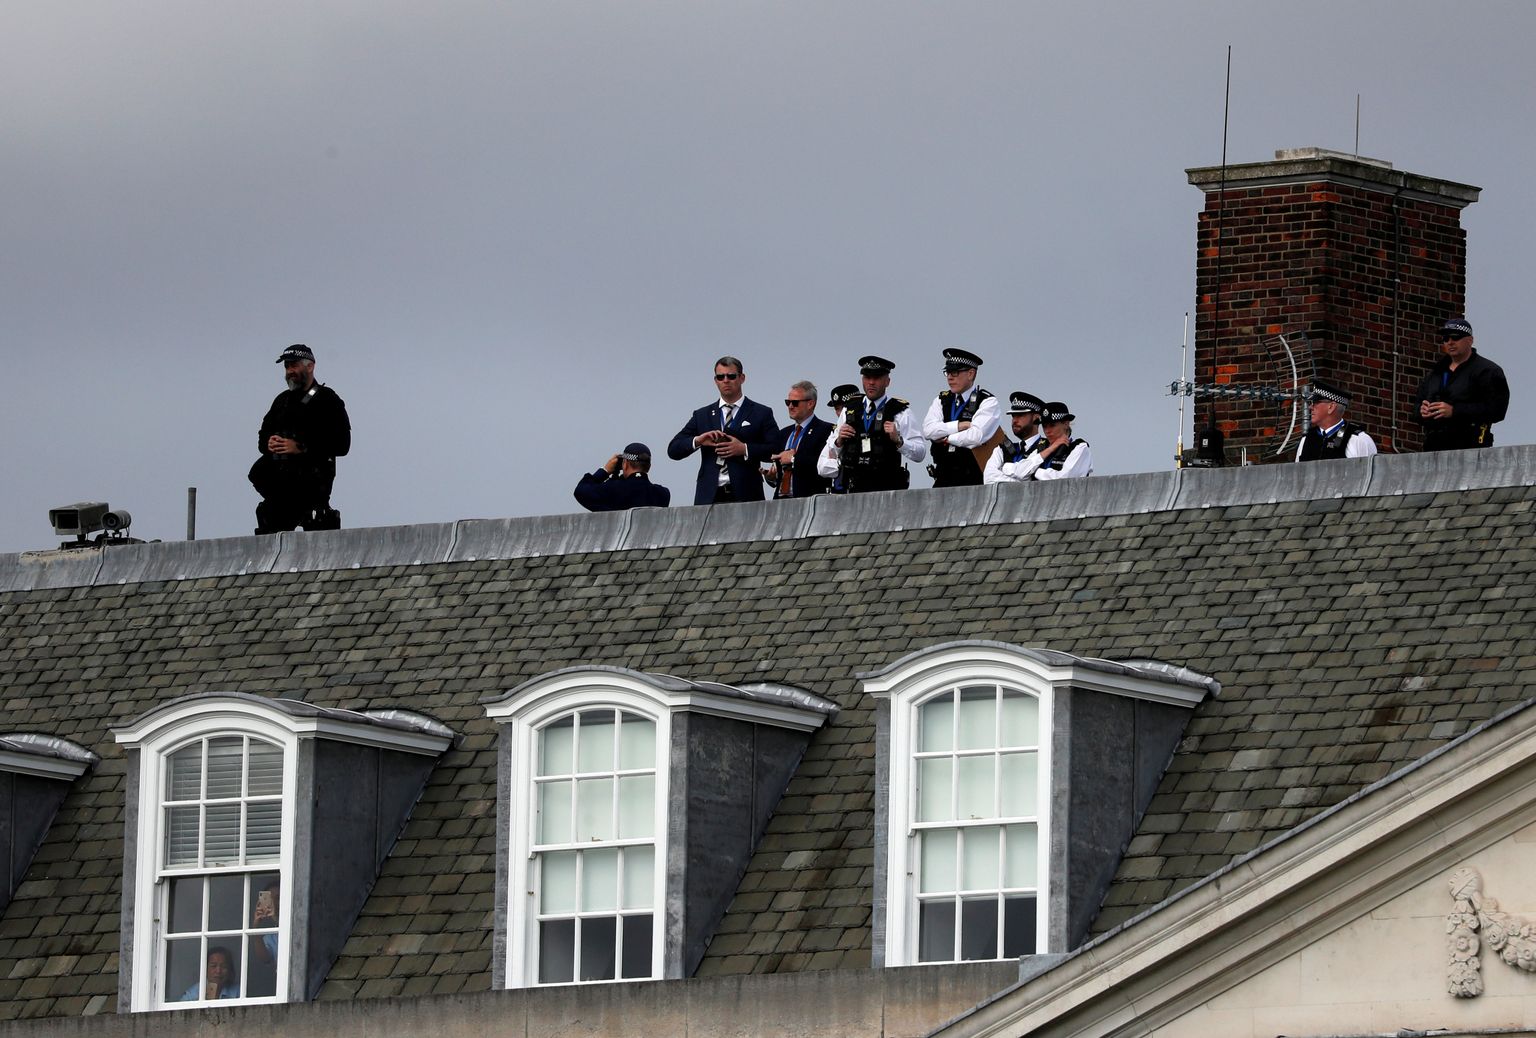 Резиденция Дональда и Мелании Трамп в США. Снайперы на крыше. Снимок иллюстративный и не связан со случившемся в Таллинне.